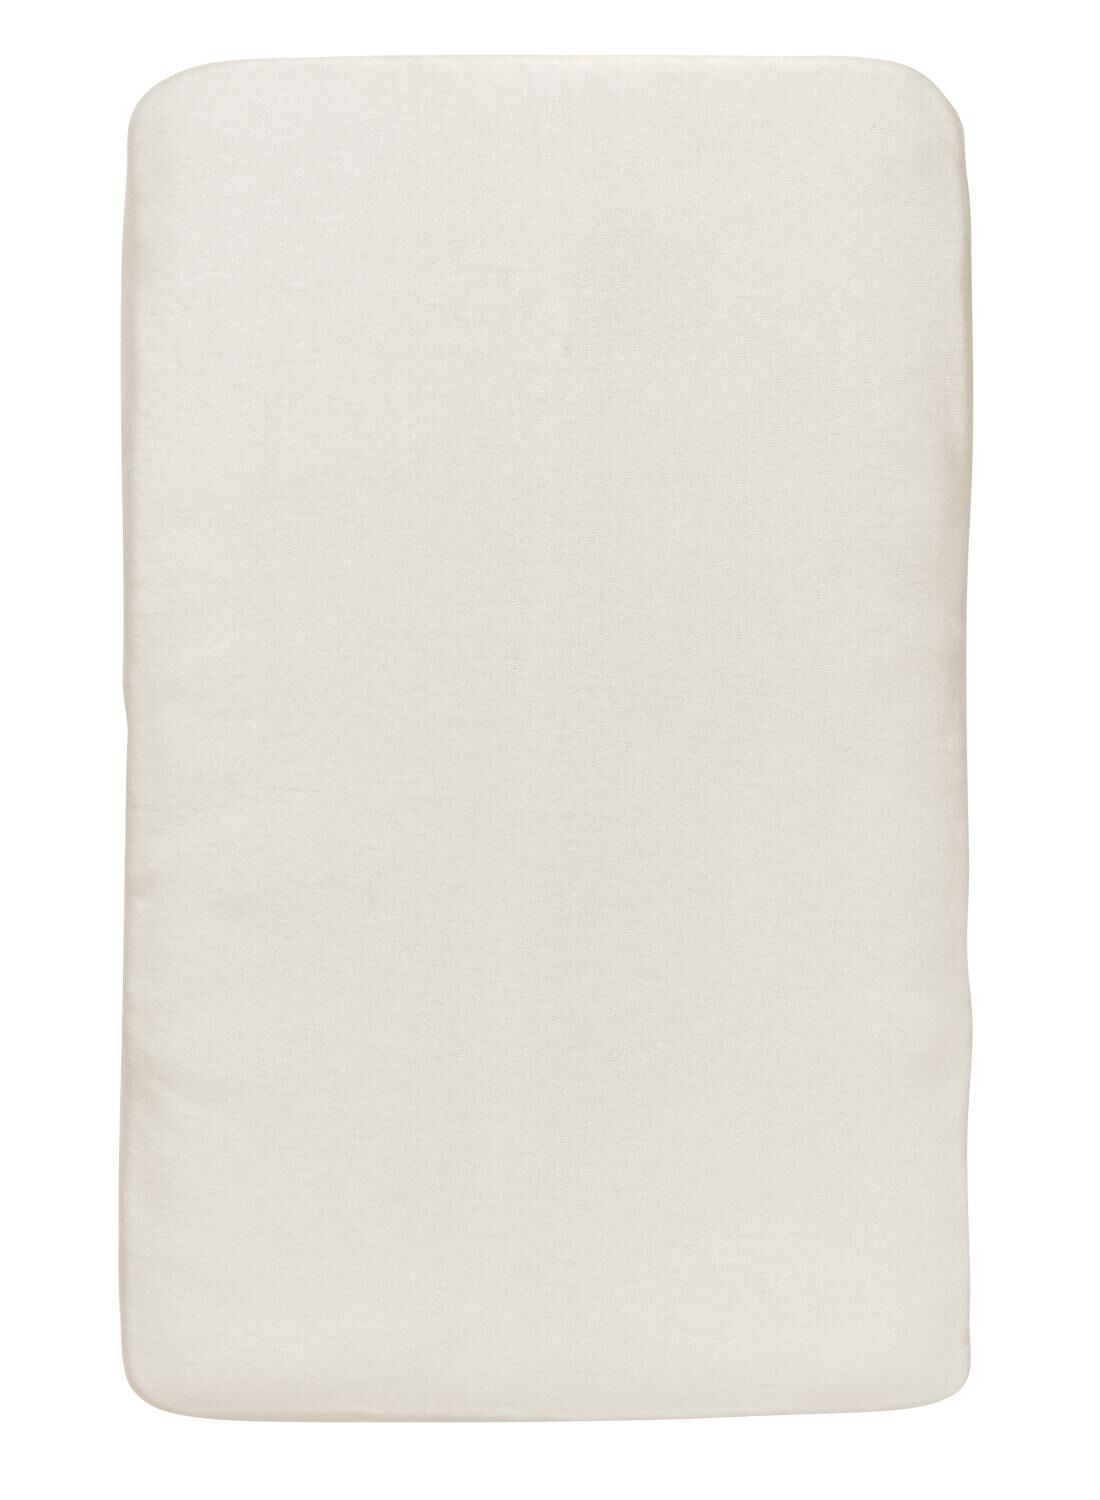 Aankleedkussenhoes 50 X 70 Cm (blanc cassé)